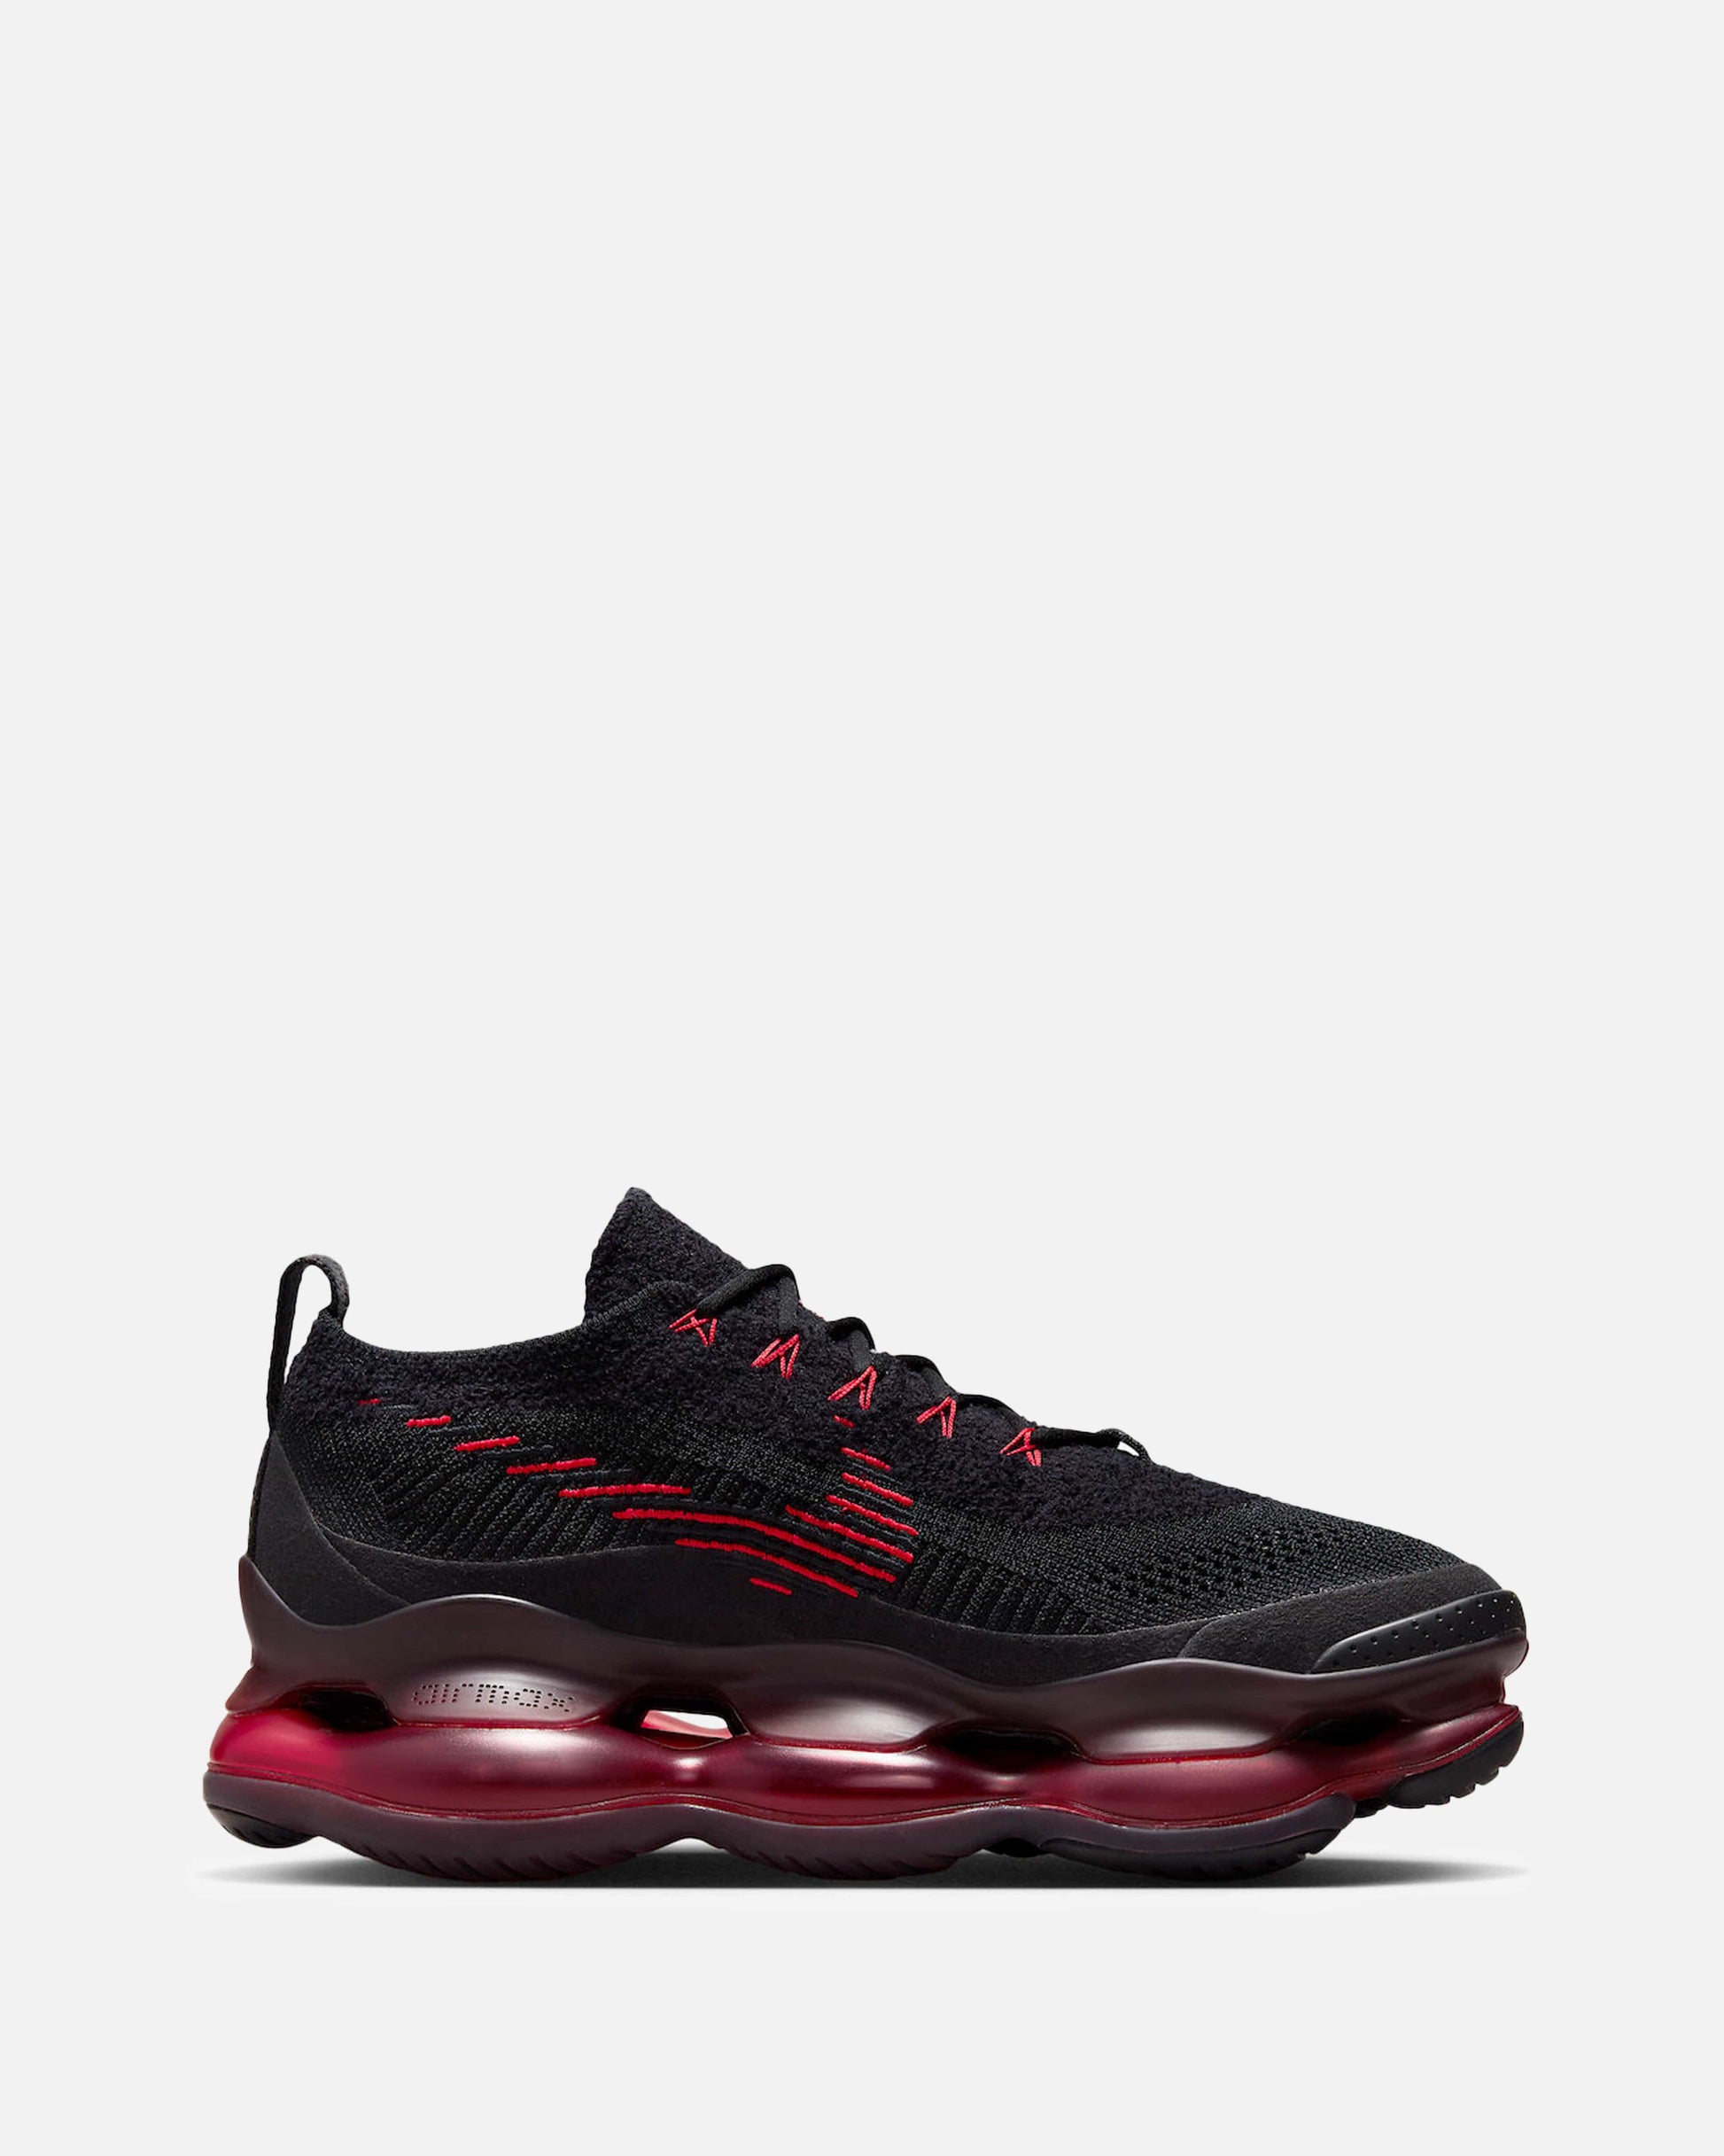 Nike Men's Sneakers Air Max Scorpion 'Black/University Red'